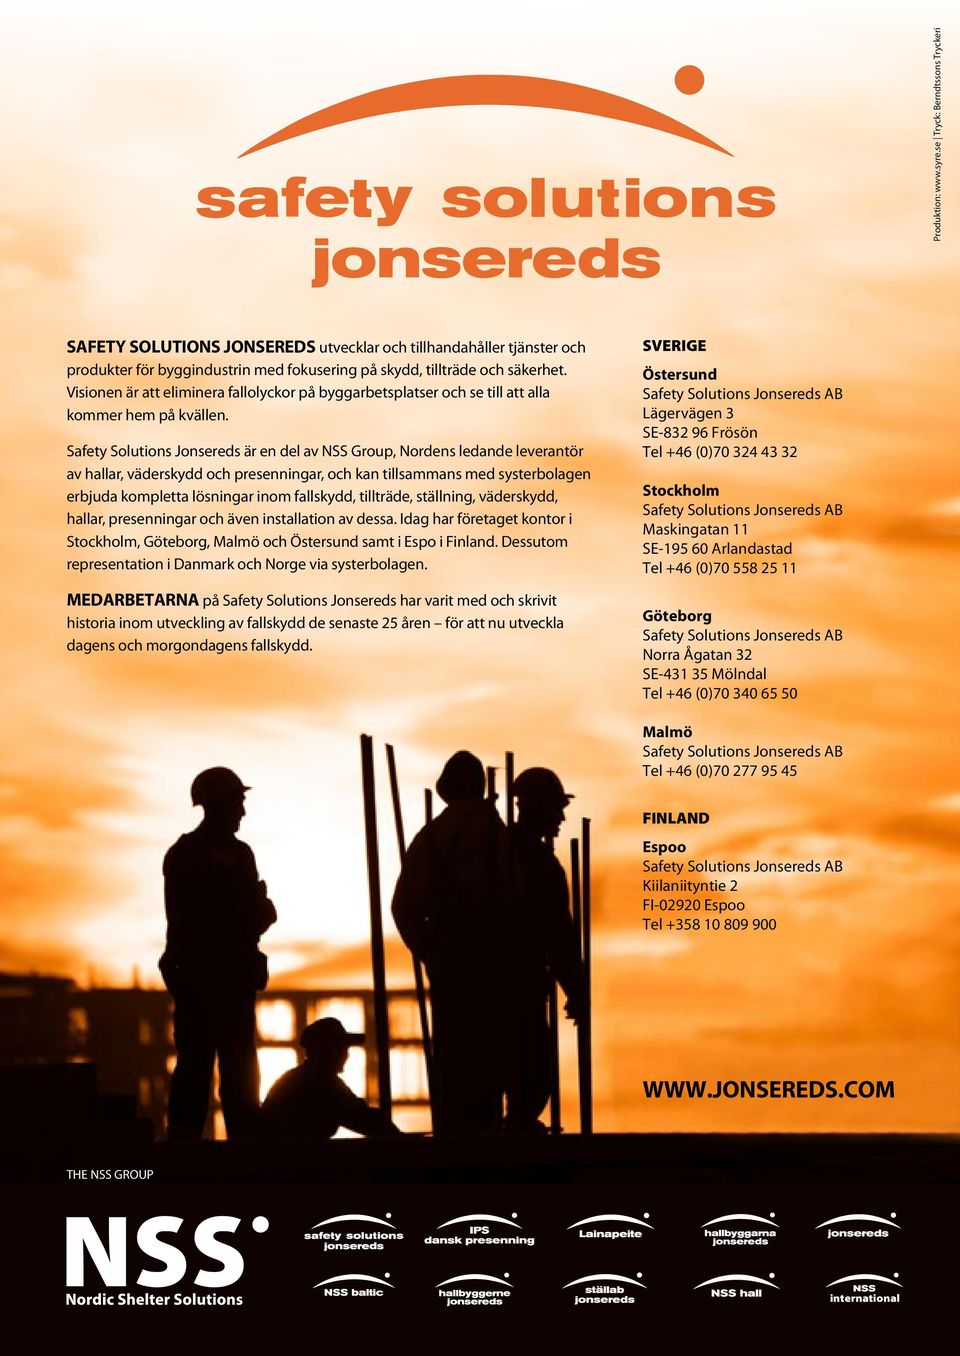 Safety Solutions Jonsereds är en del av NSS Group, Nordens ledande leverantör av hallar, väderskydd och presenningar, och kan tillsammans med systerbolagen erbjuda kompletta lösningar inom fallskydd,